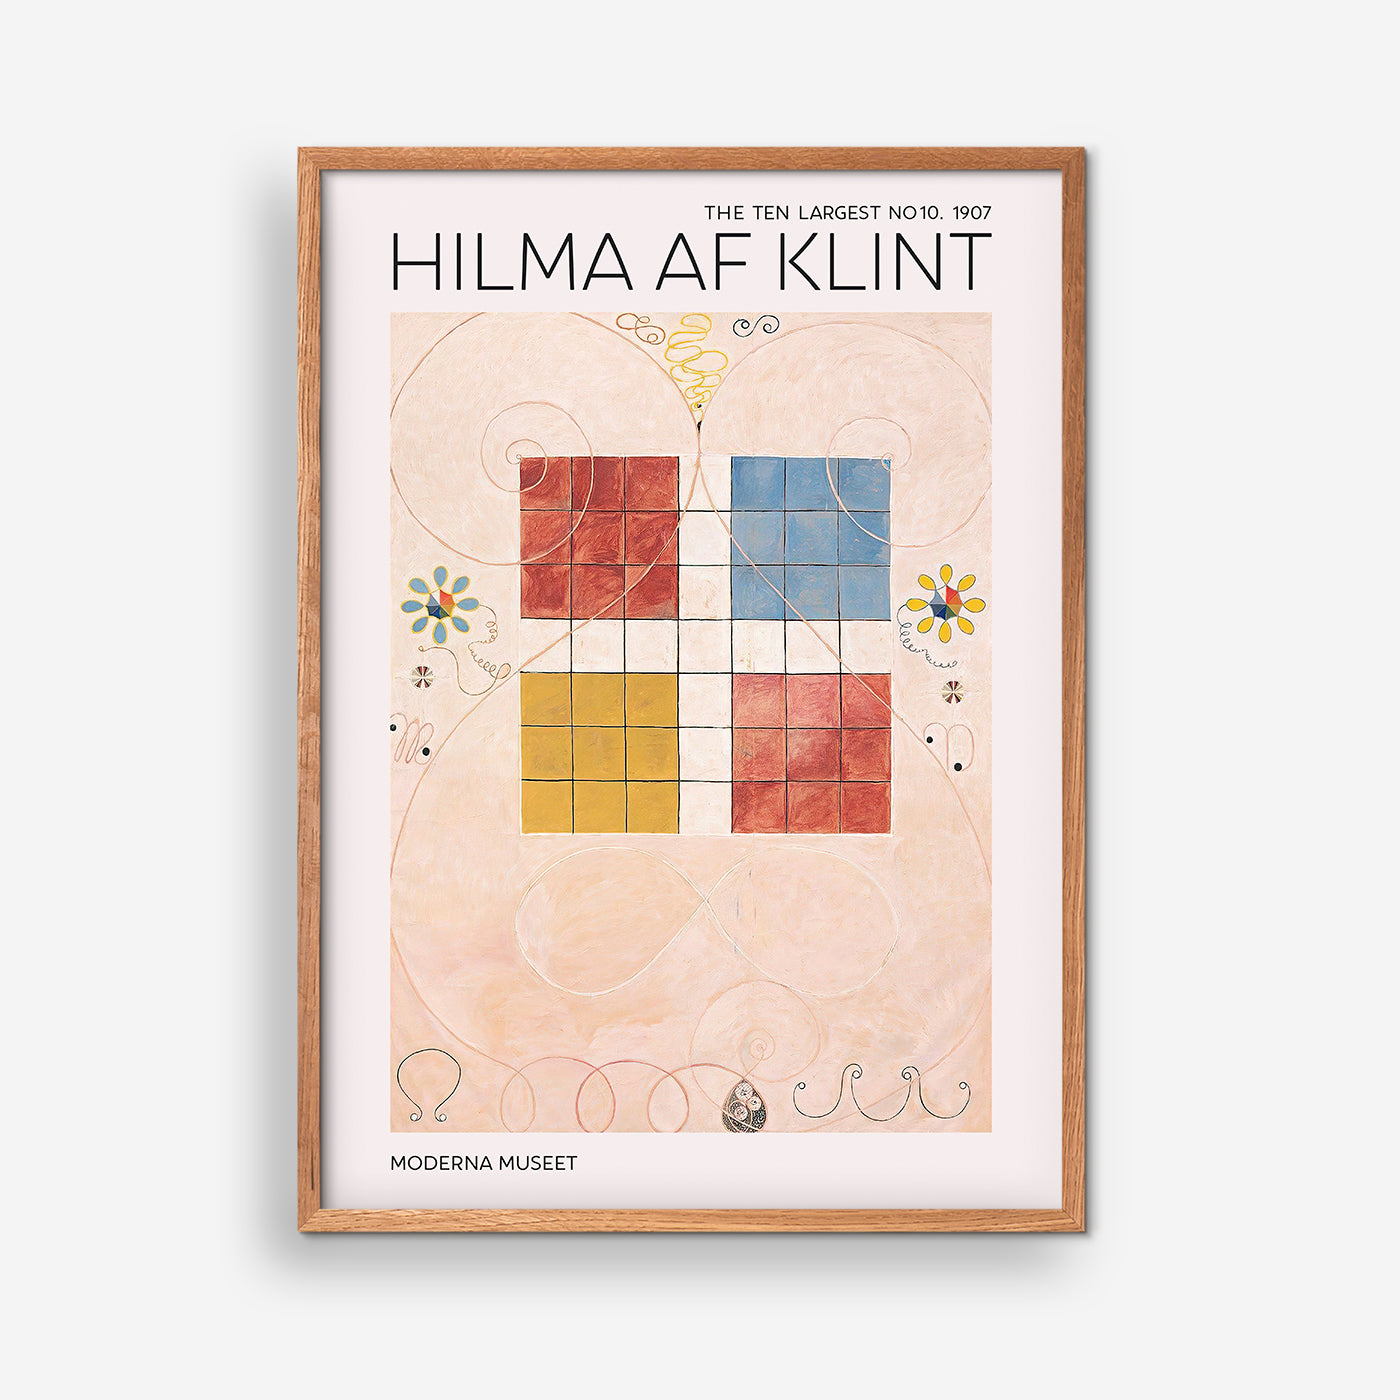 The Ten Largest No. 10 - Hilma Of Klint